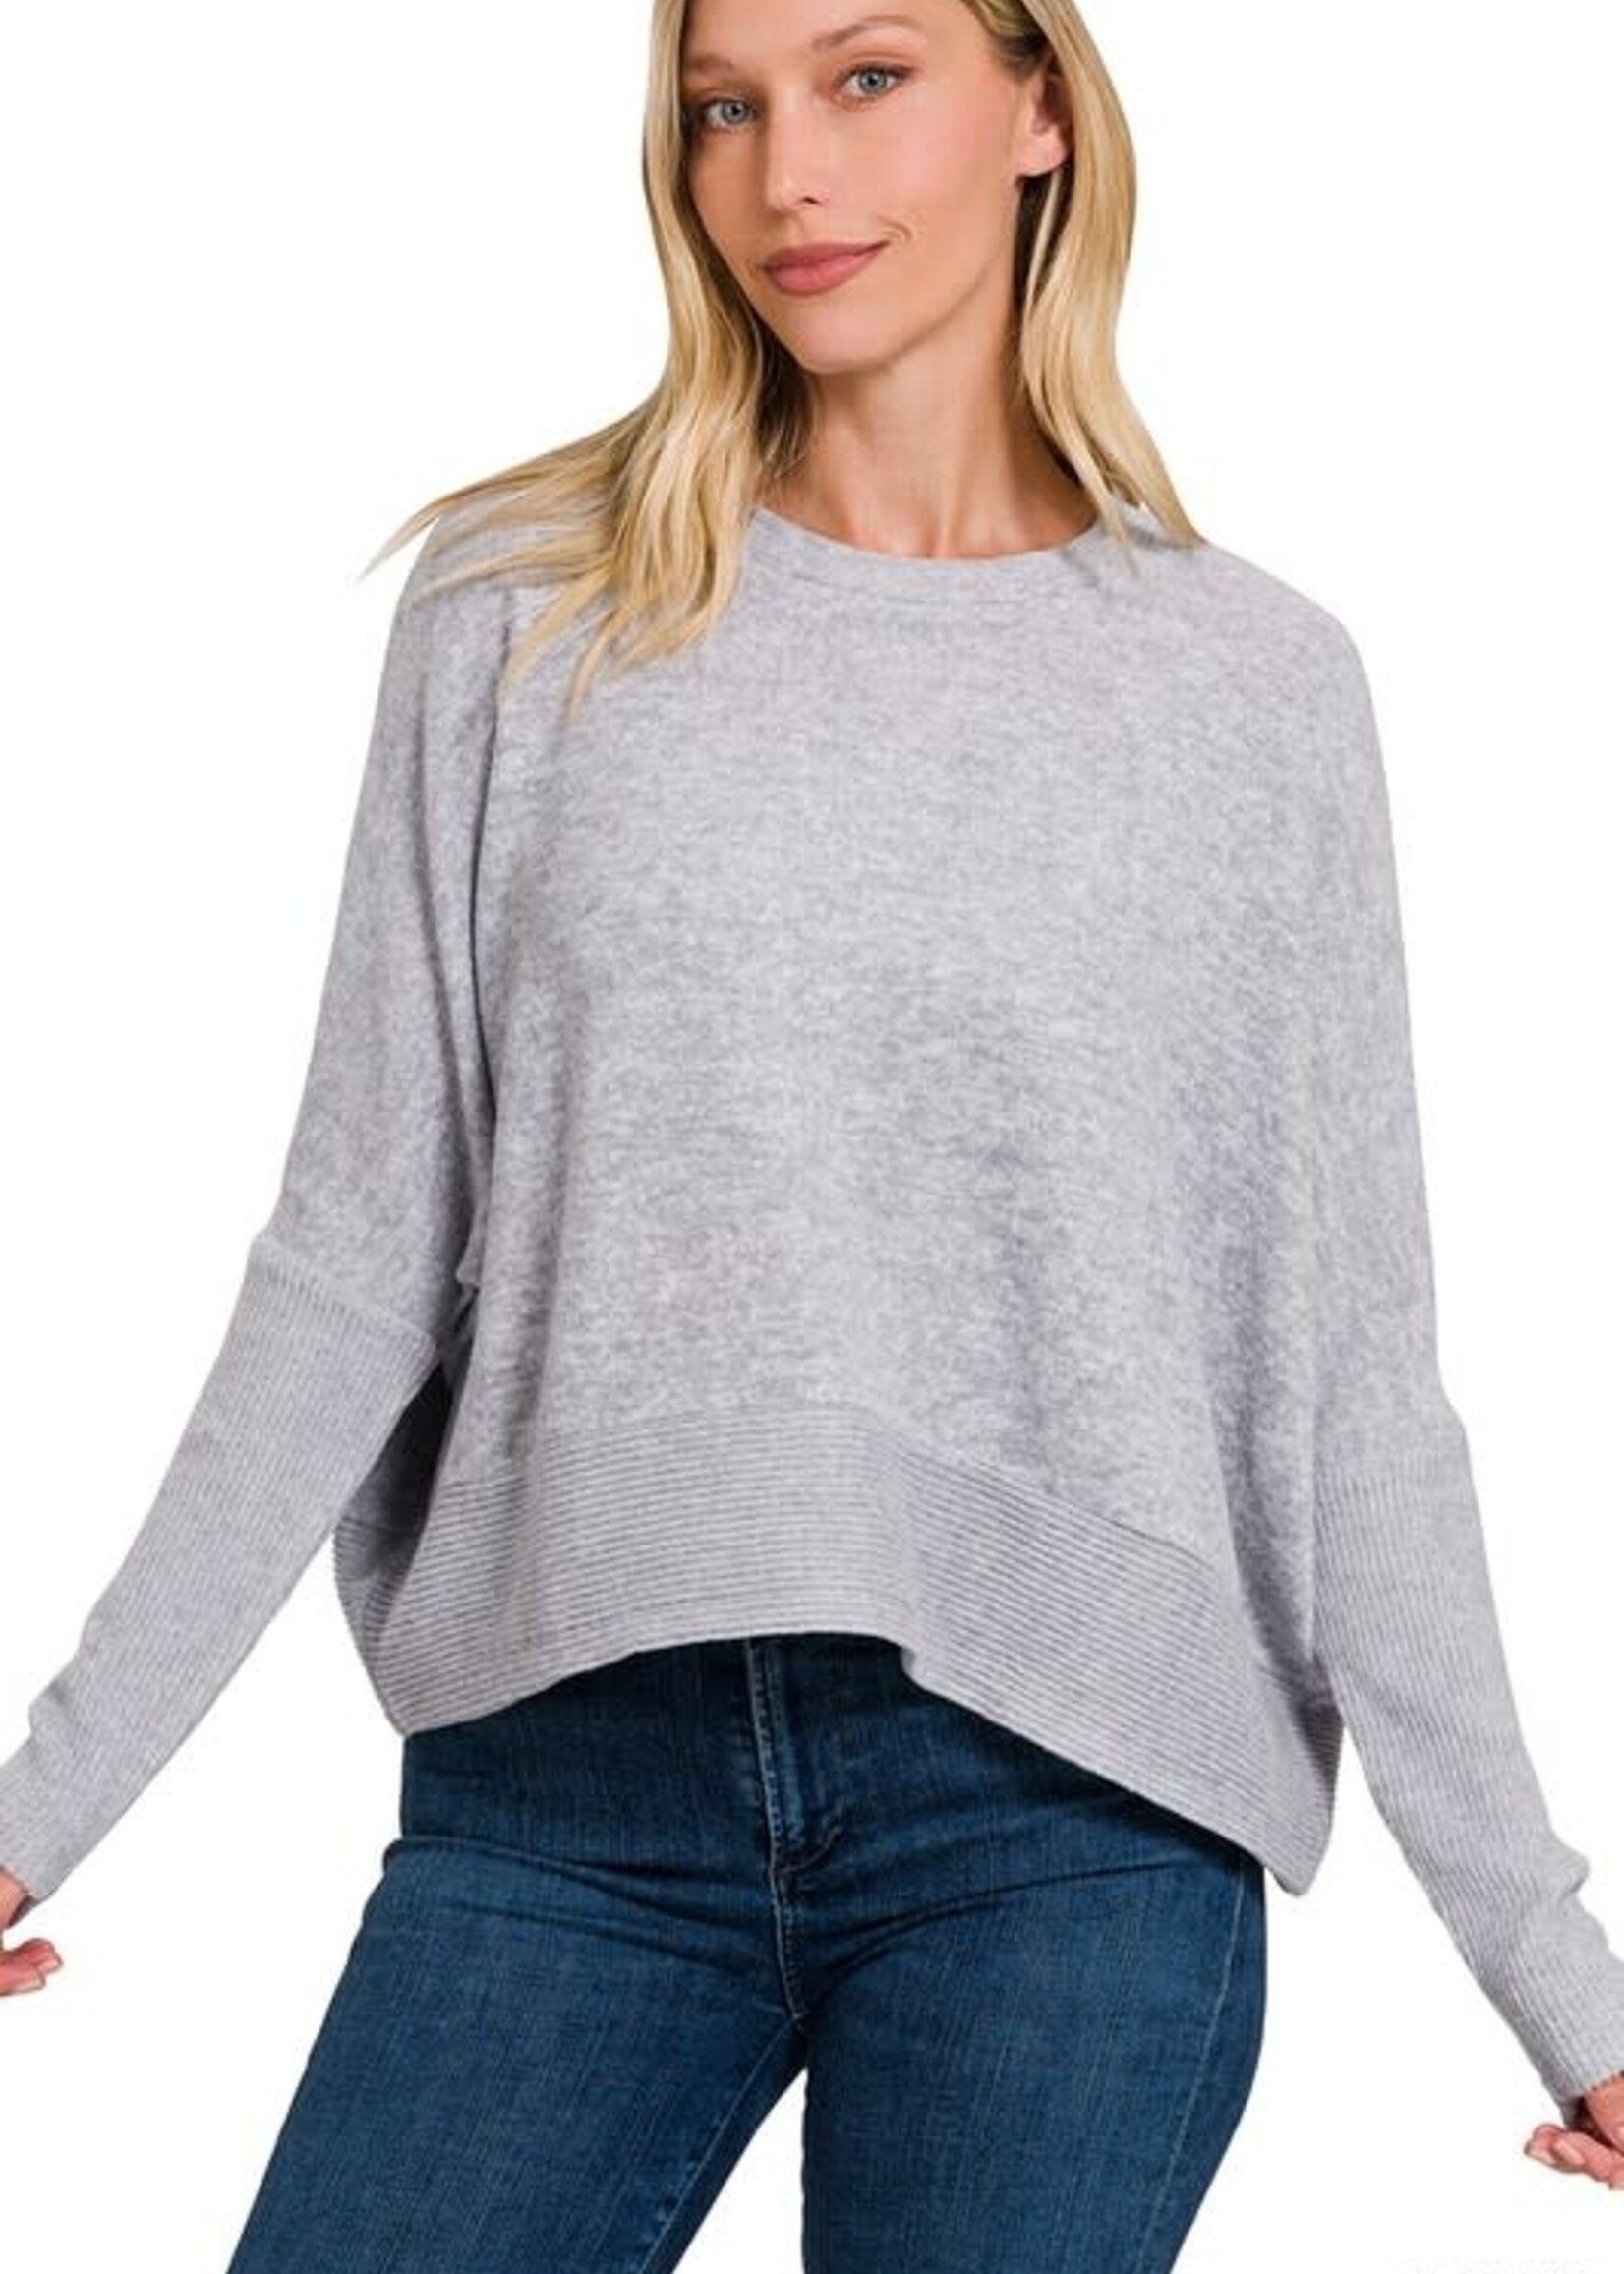 Zenana Brushed Dolman sleeve sweater